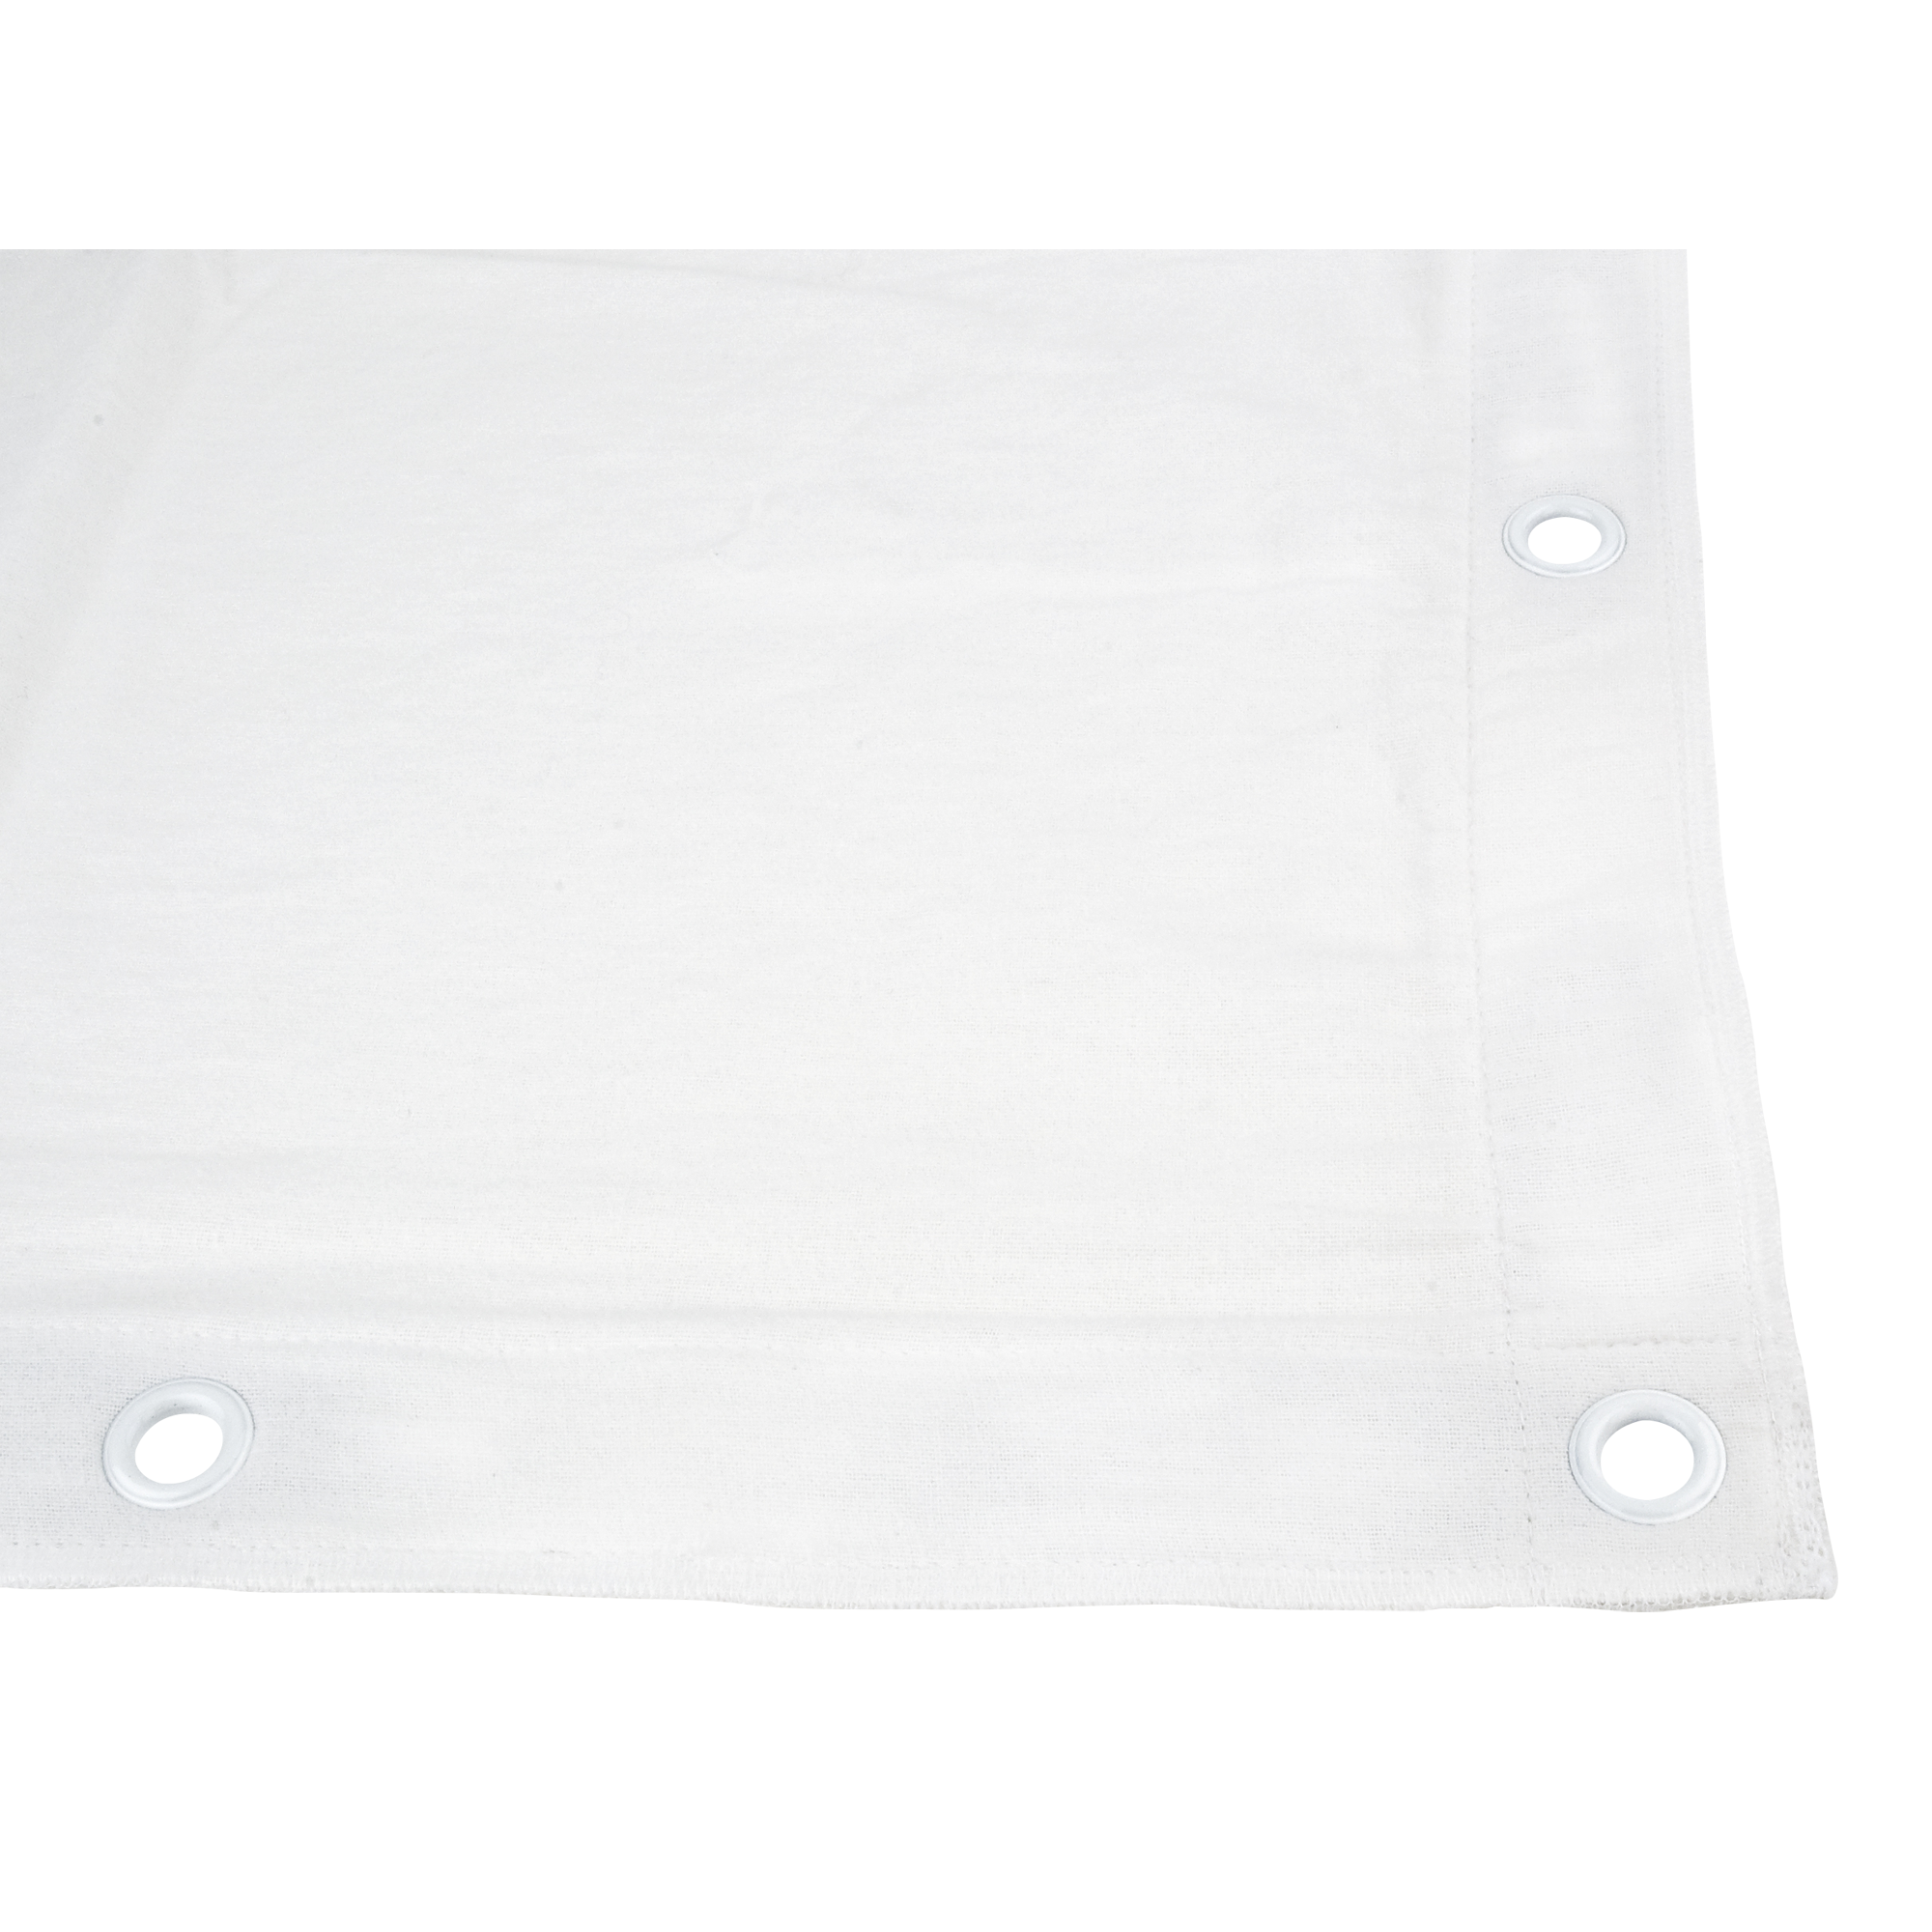 Showgear Square Cloth Dekomolton 160 g/m² Weiß - 540 (B) x 540 (H) cm - 88 Bindungsgummis